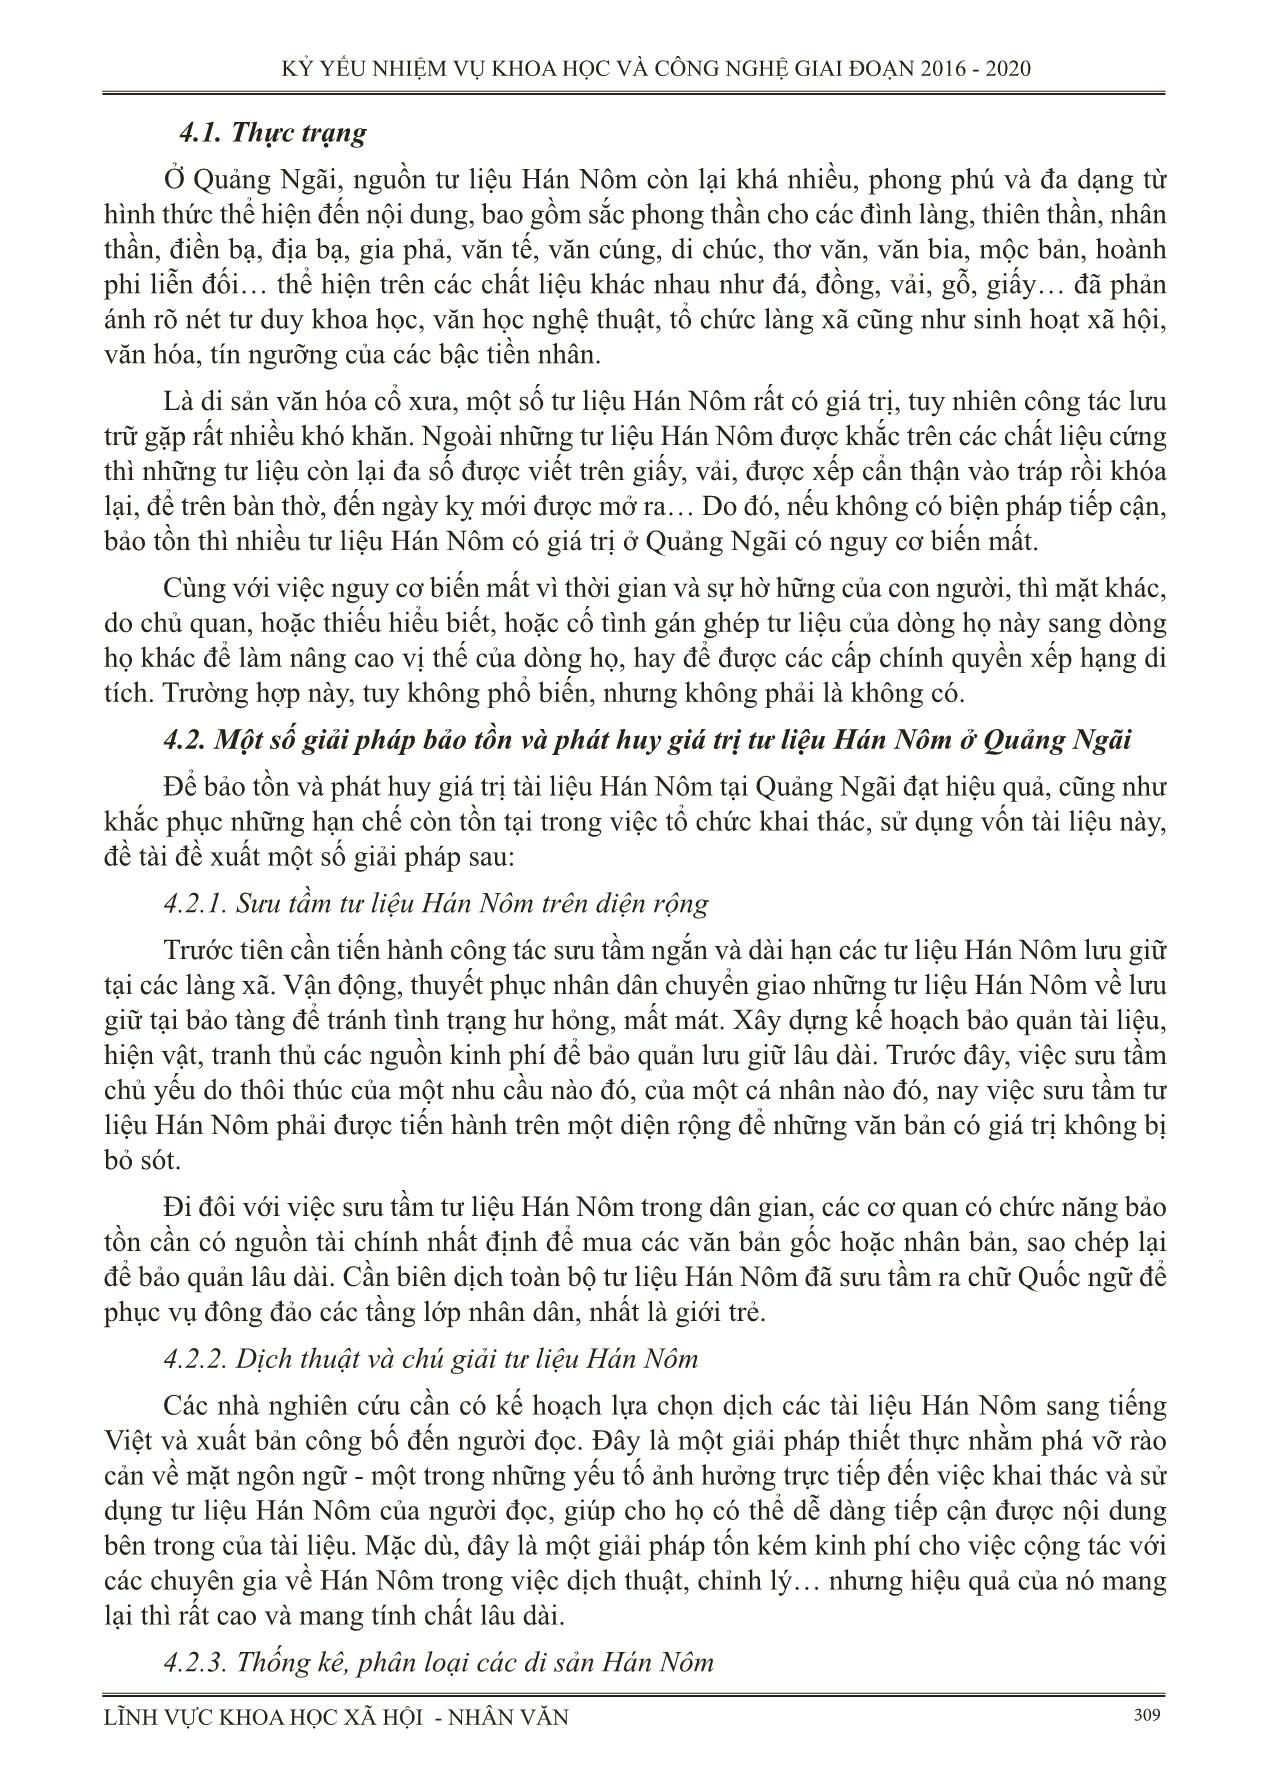 Sưu tầm, dịch thuật, phân loại và đánh giá tư liệu Hán Nôm ở Quảng Ngãi trang 4